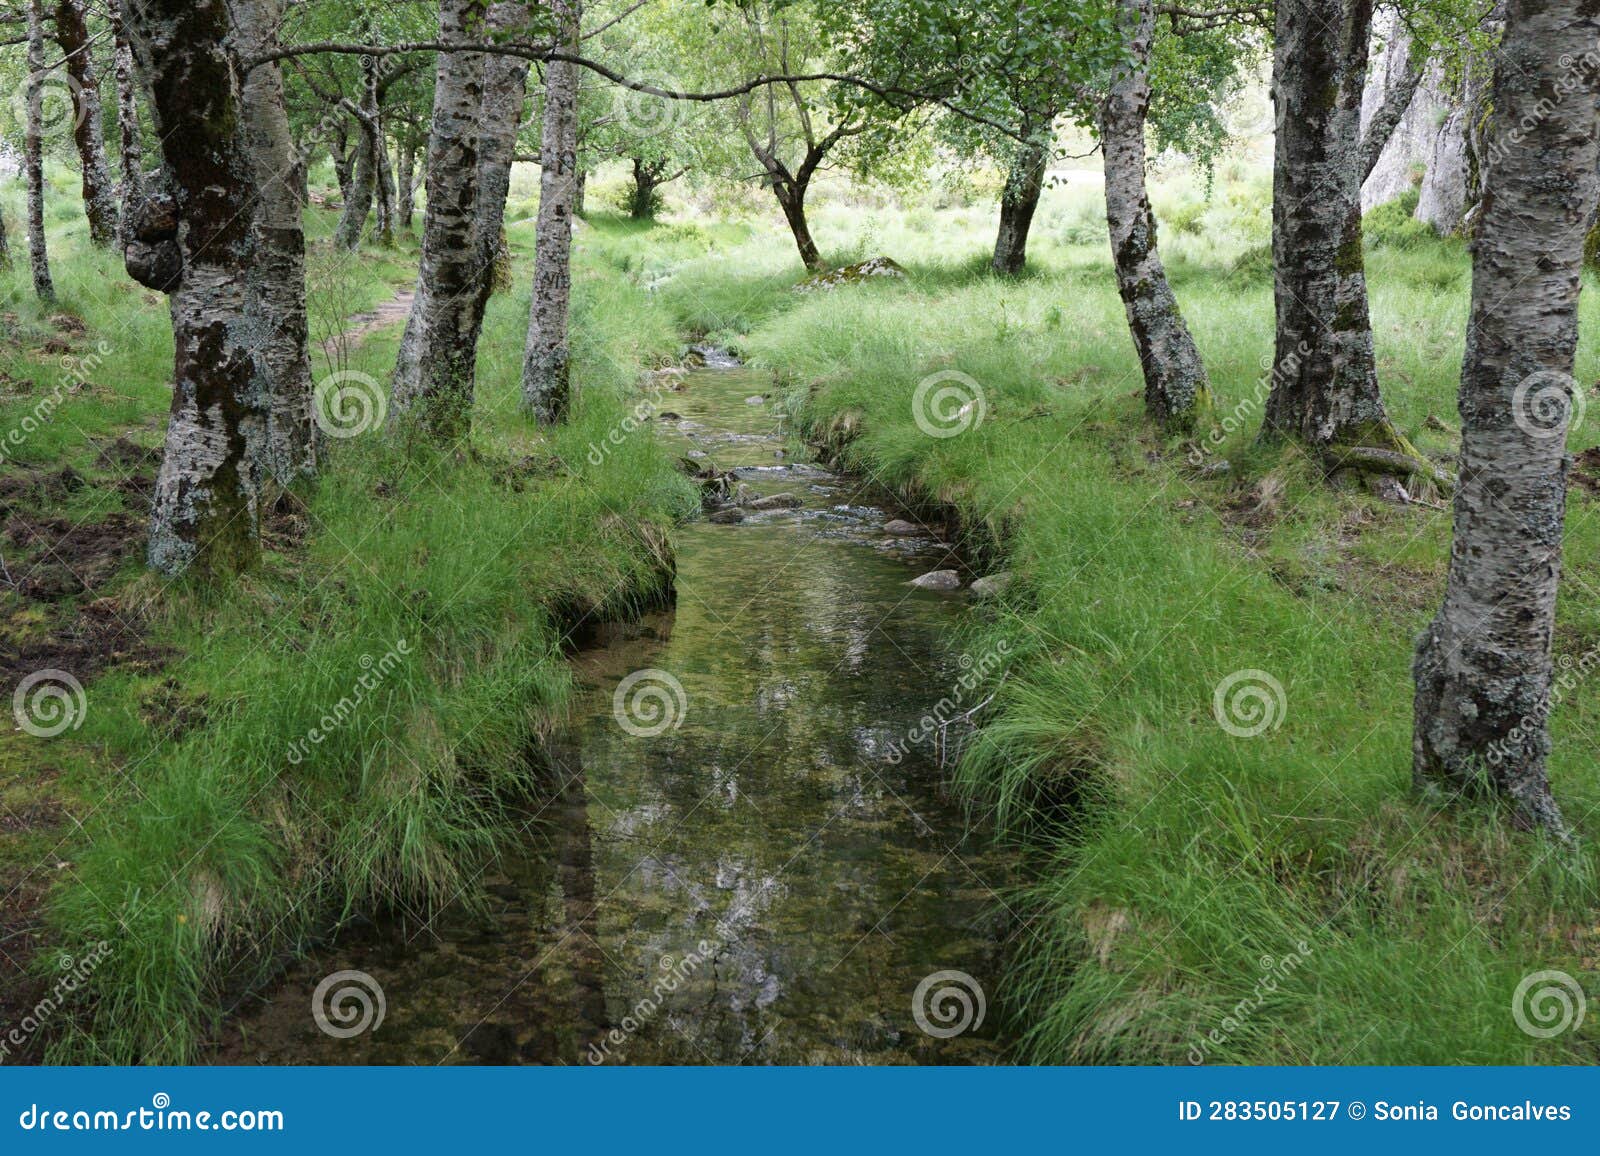 river zezere in serra da estrela natural park in portugal